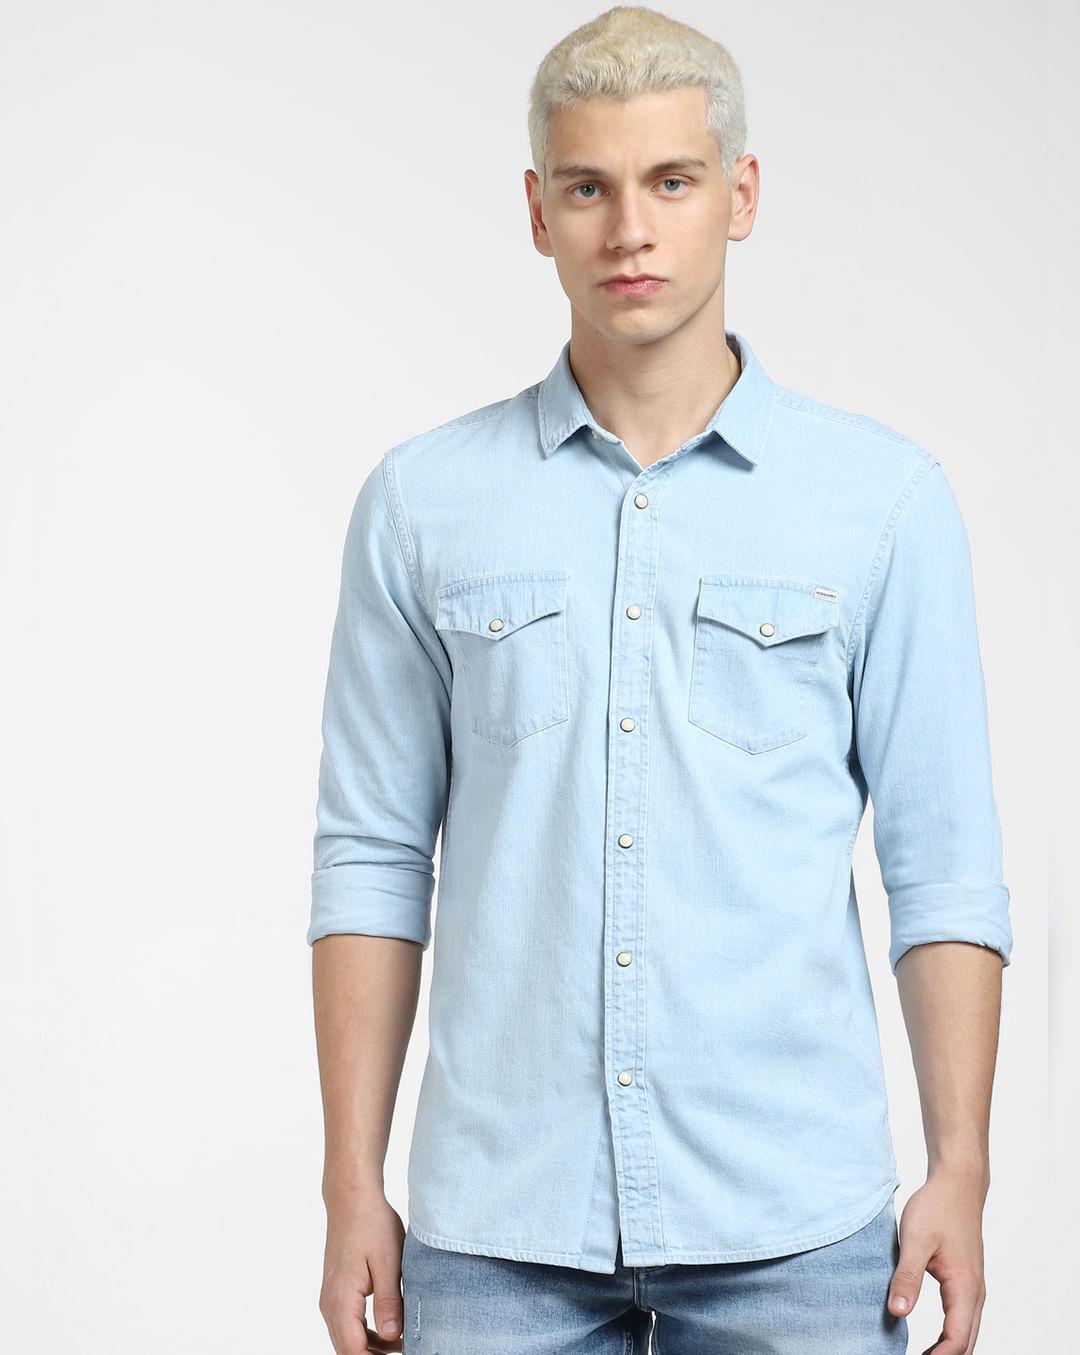 blue-denim-full-sleeves-shirt